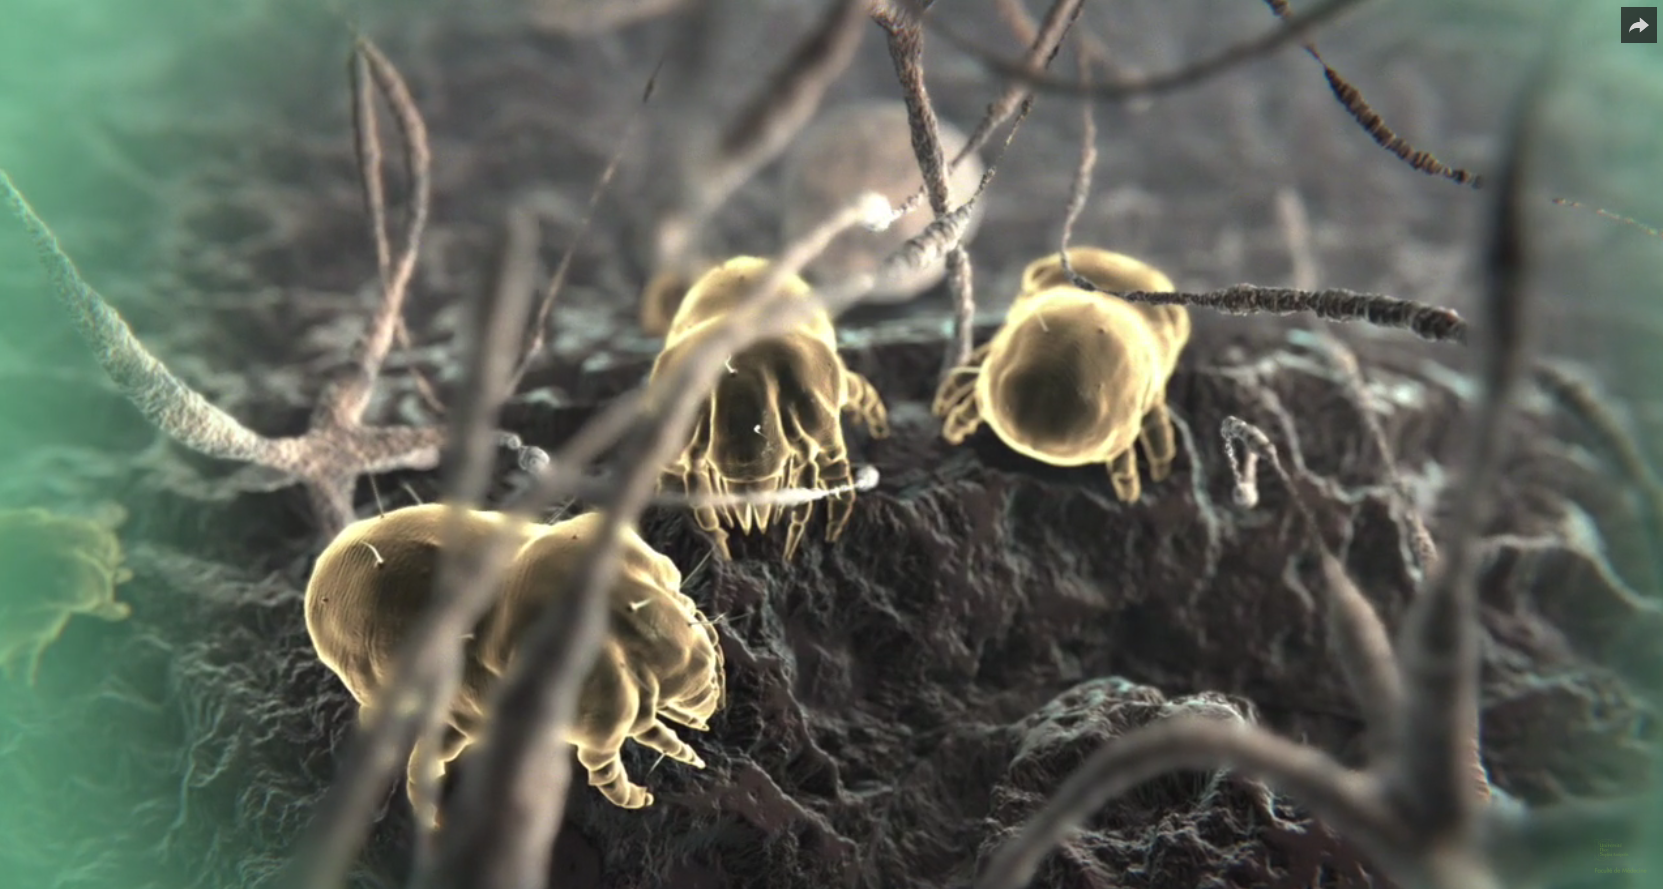 Les acariens : de nouveaux acteurs dans les maladies inflammatoires intestinales ? (video abstract)